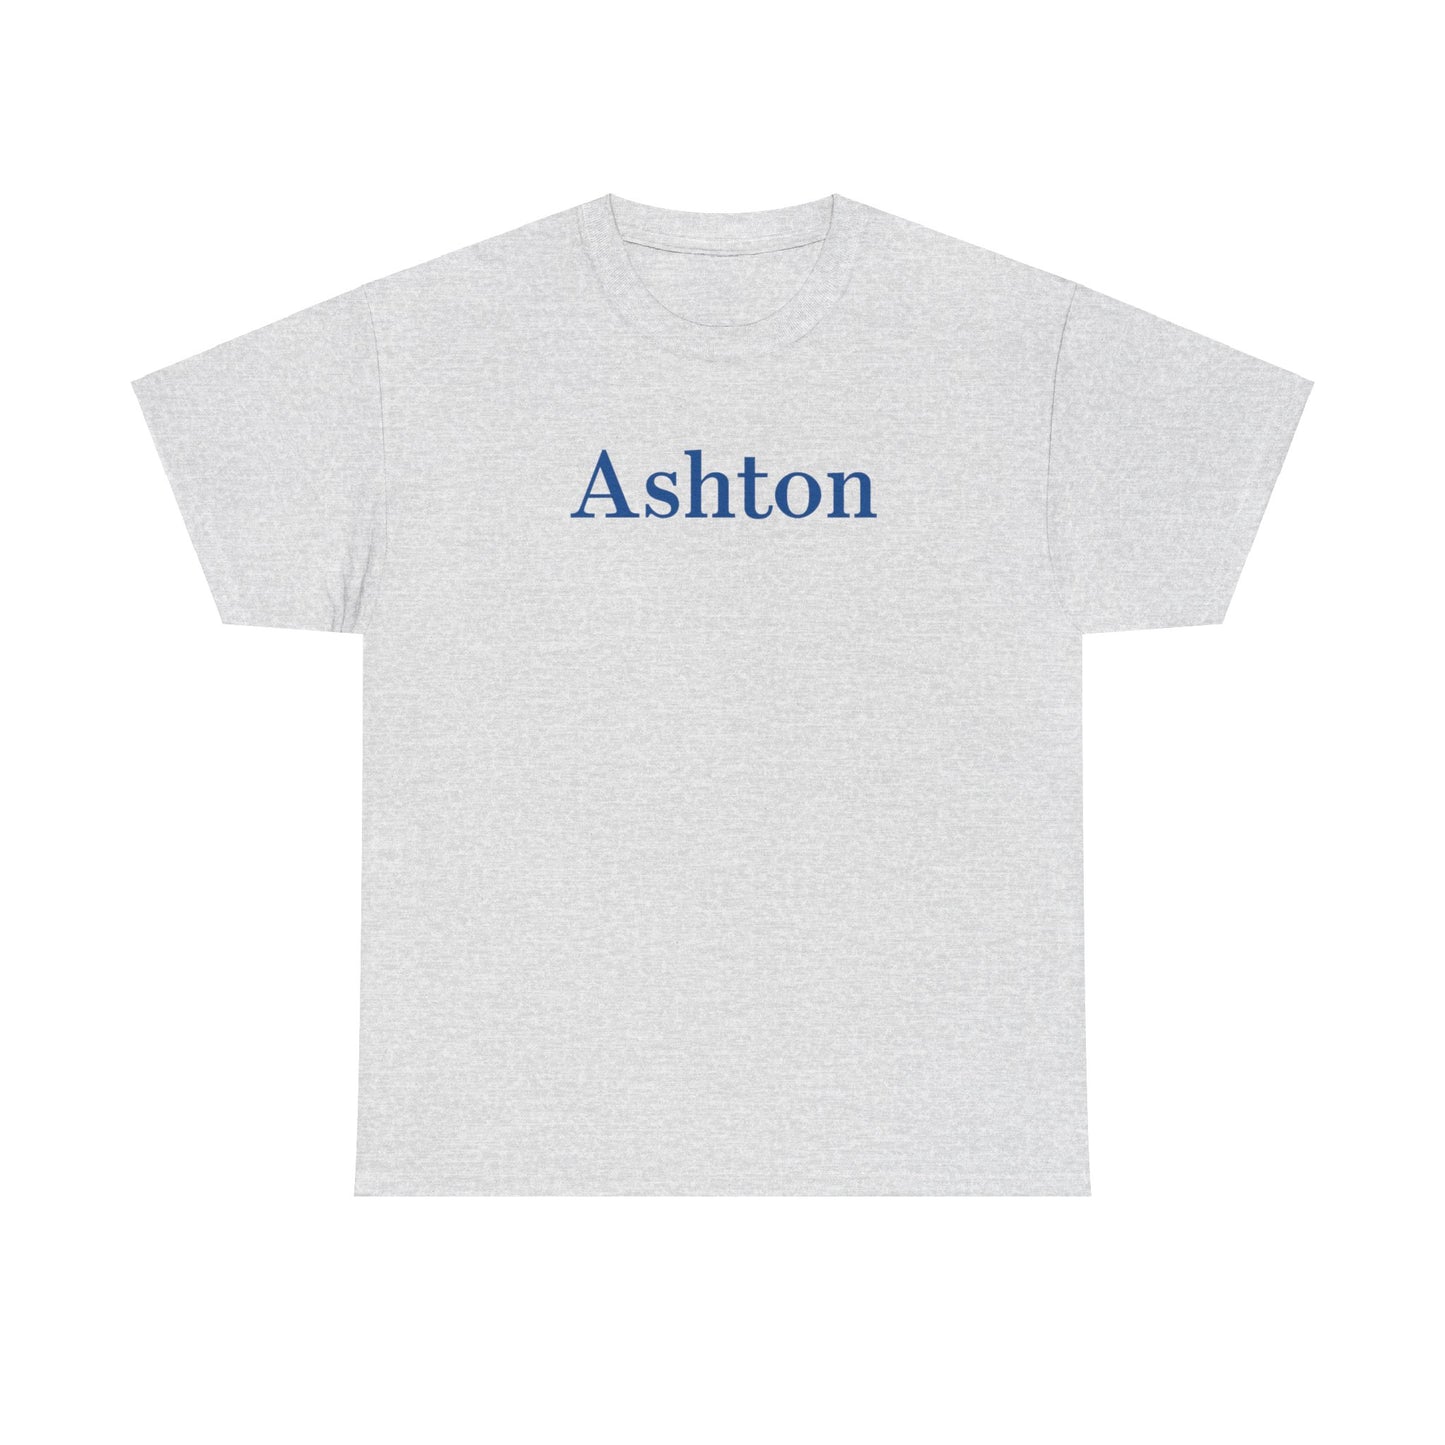 Ashton Unisex Cotton Tee